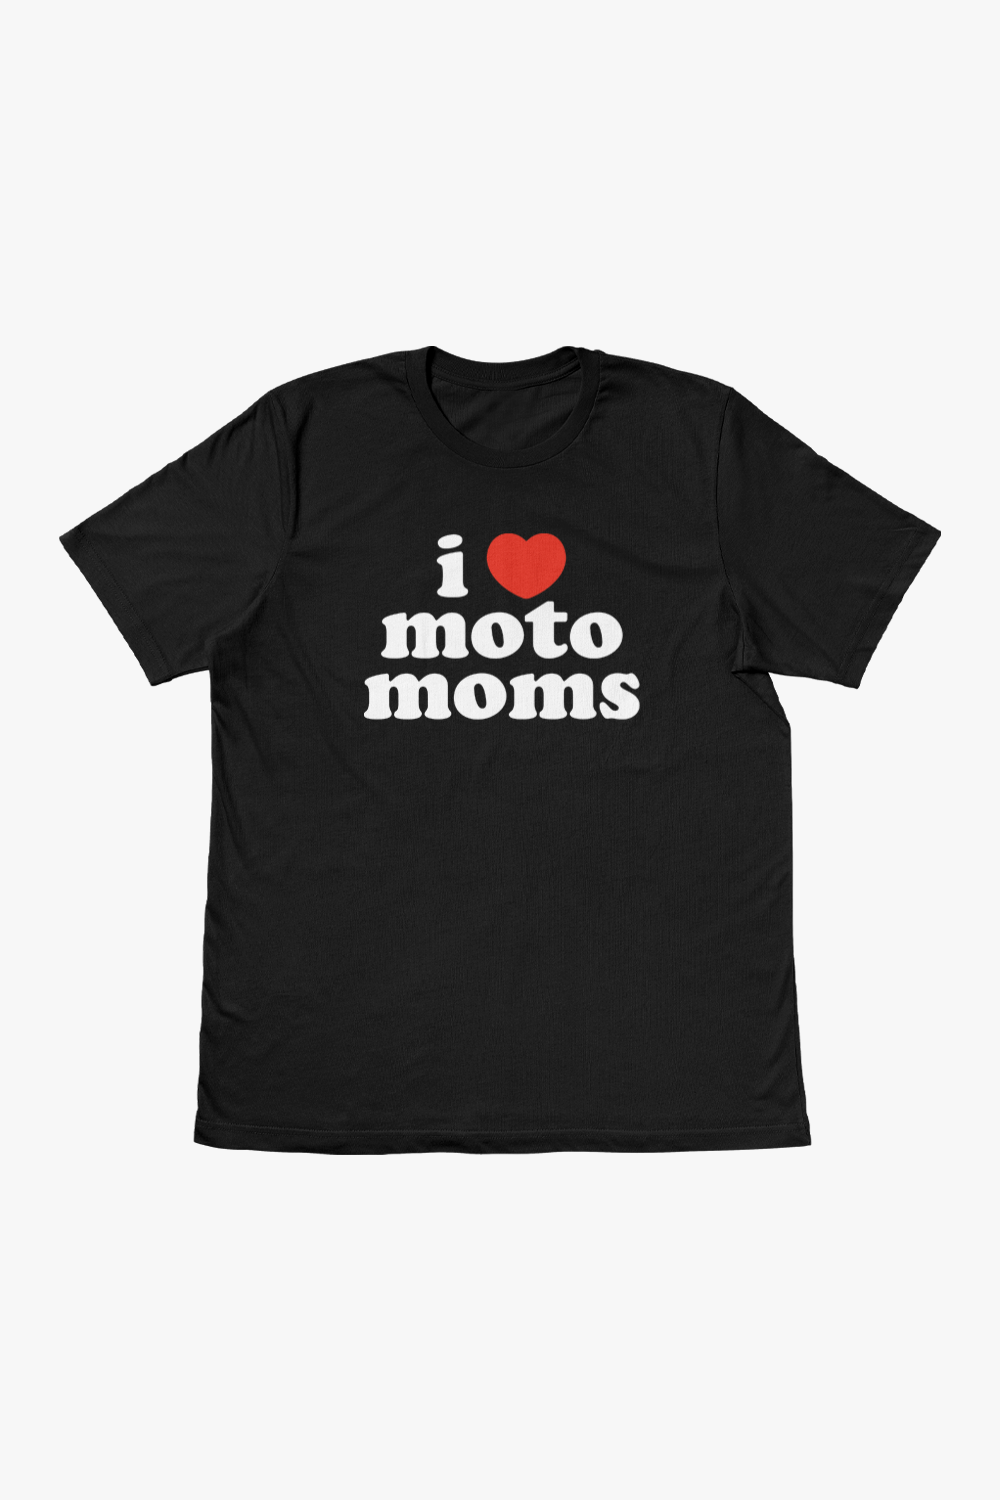 I Heart Moto Moms Tee